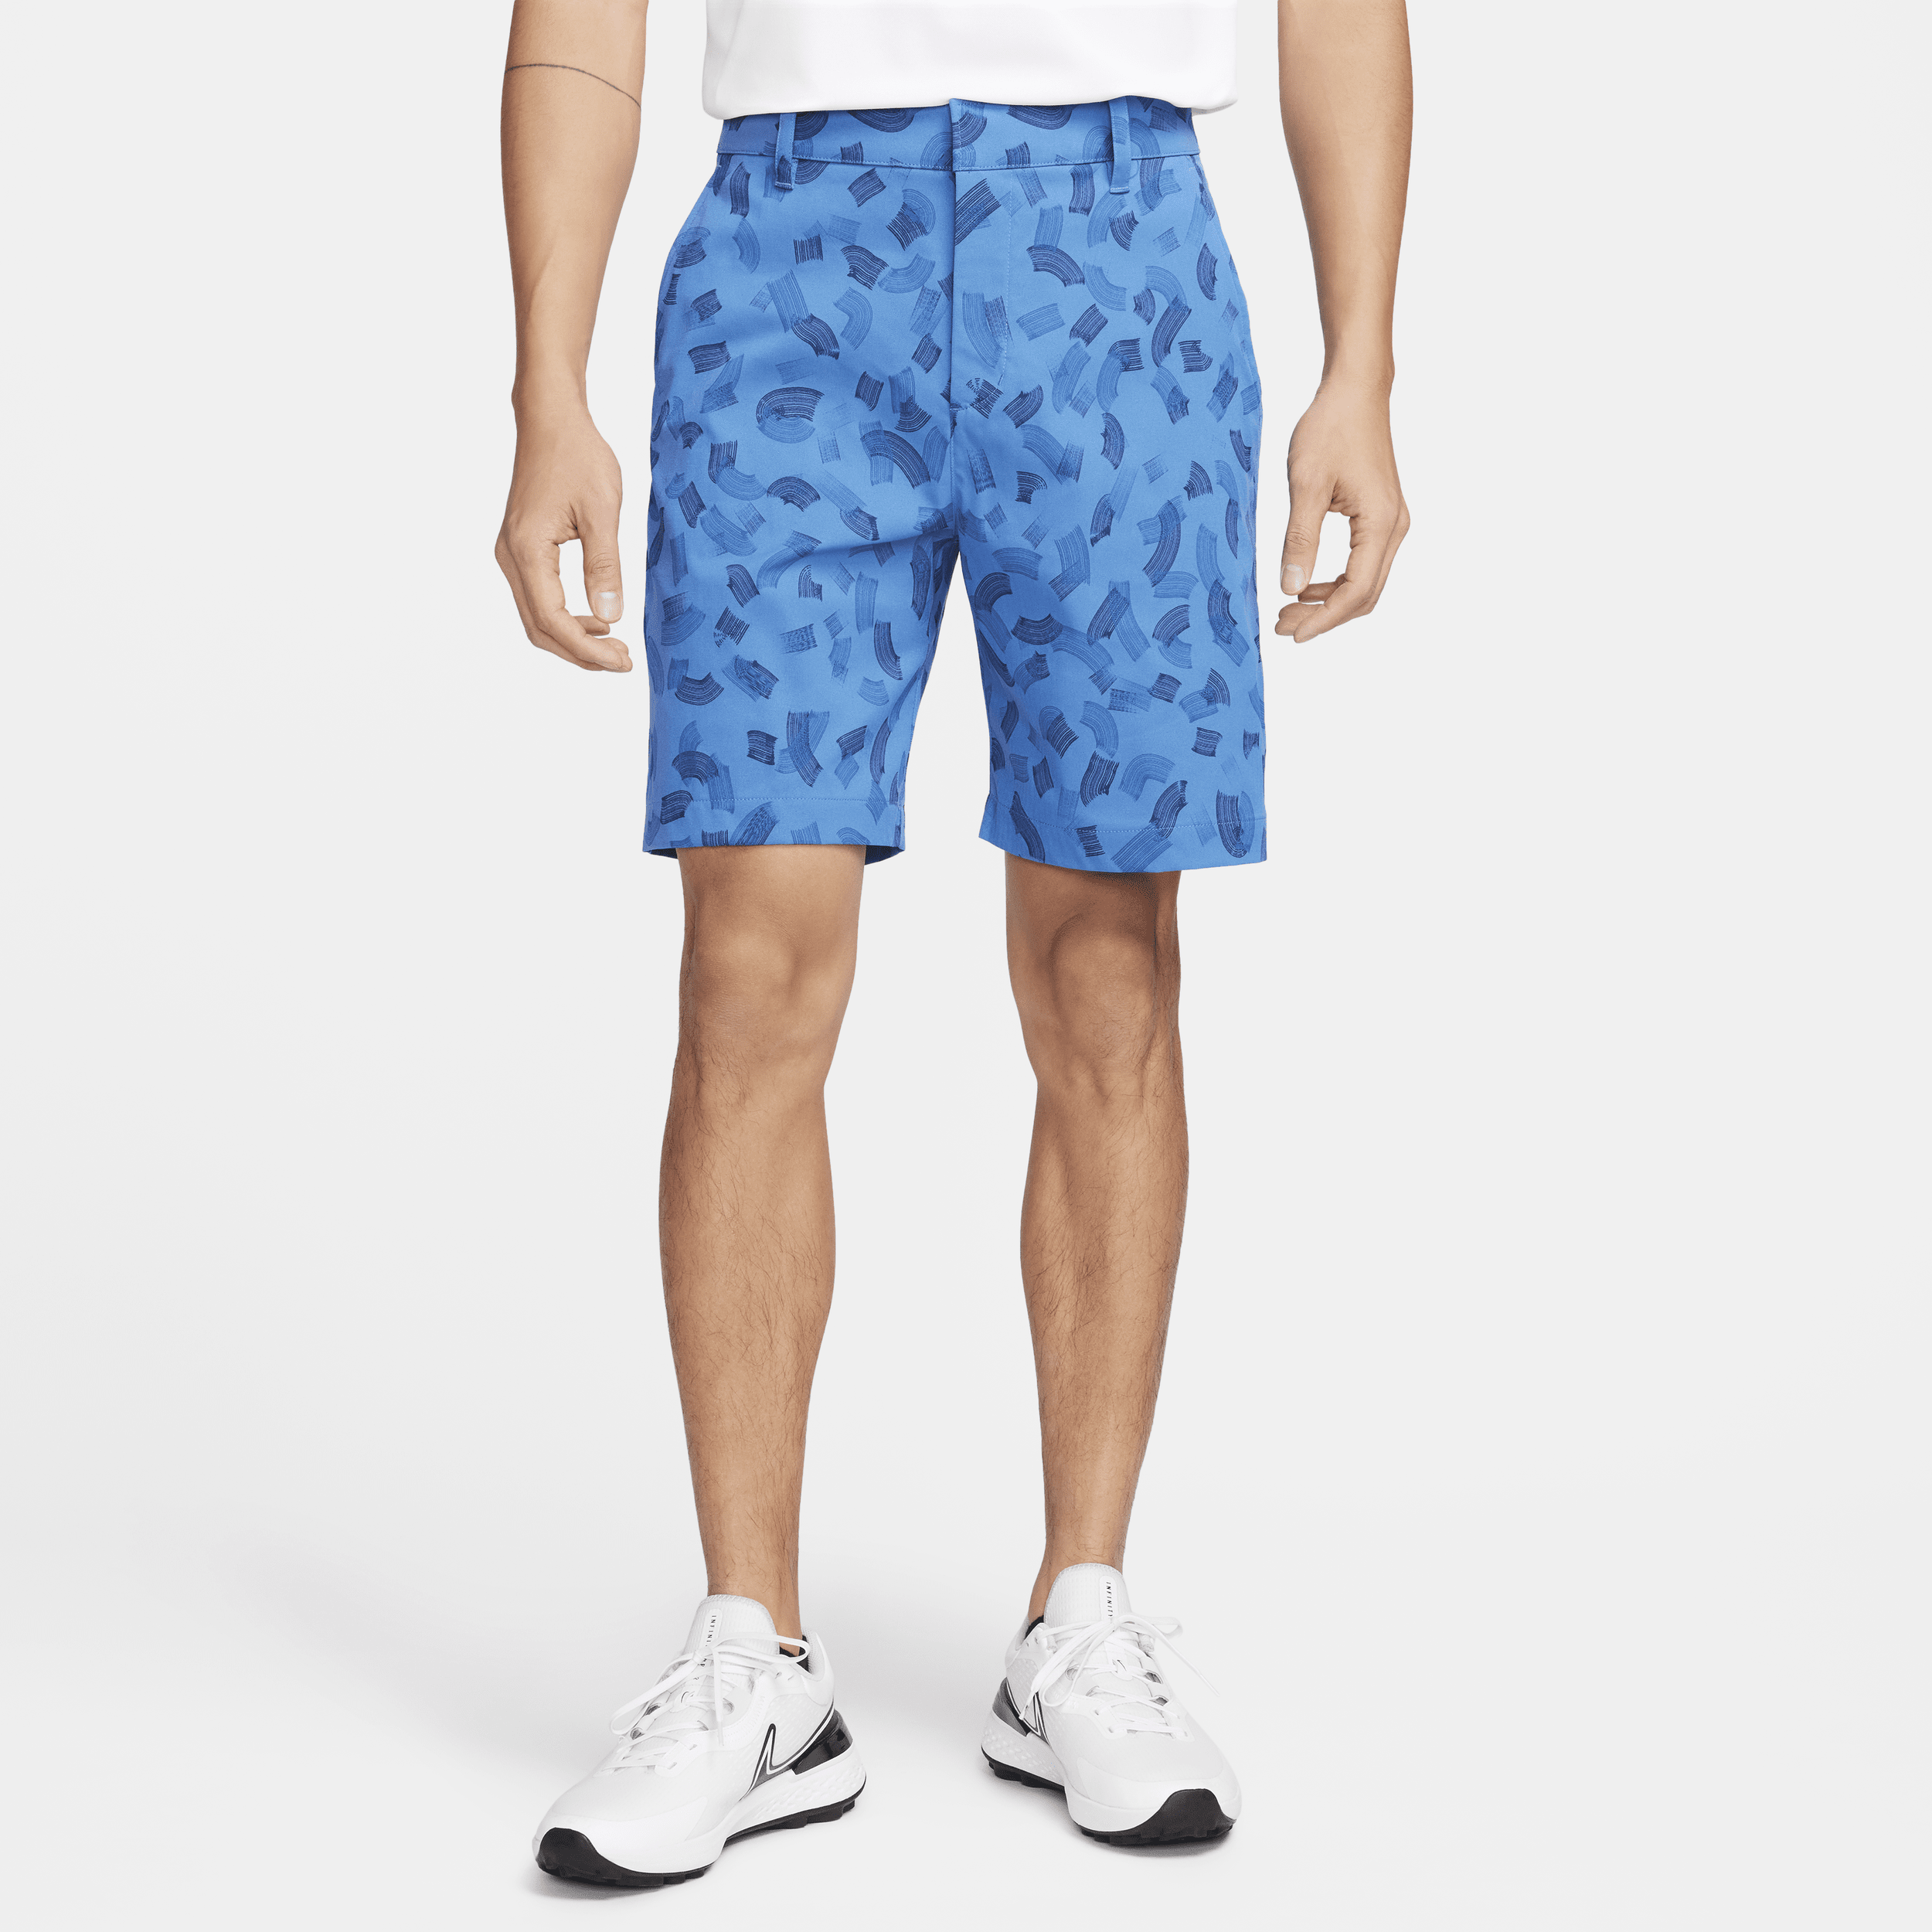 Nike Tour Pantalón corto chino de golf de 20 cm - Hombre - Azul